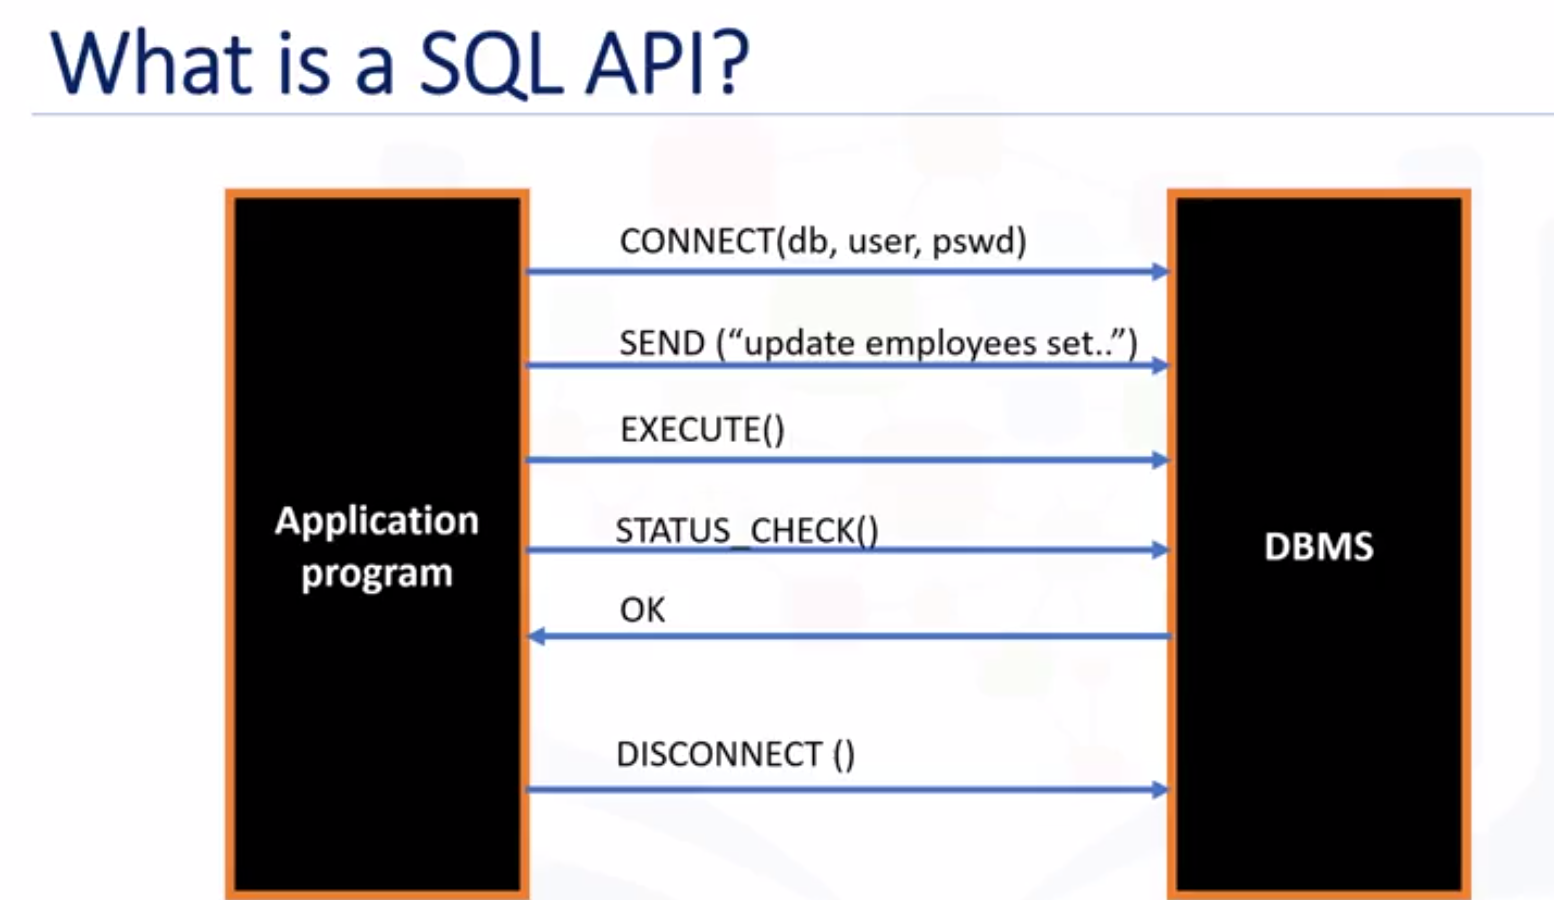 The SQL API